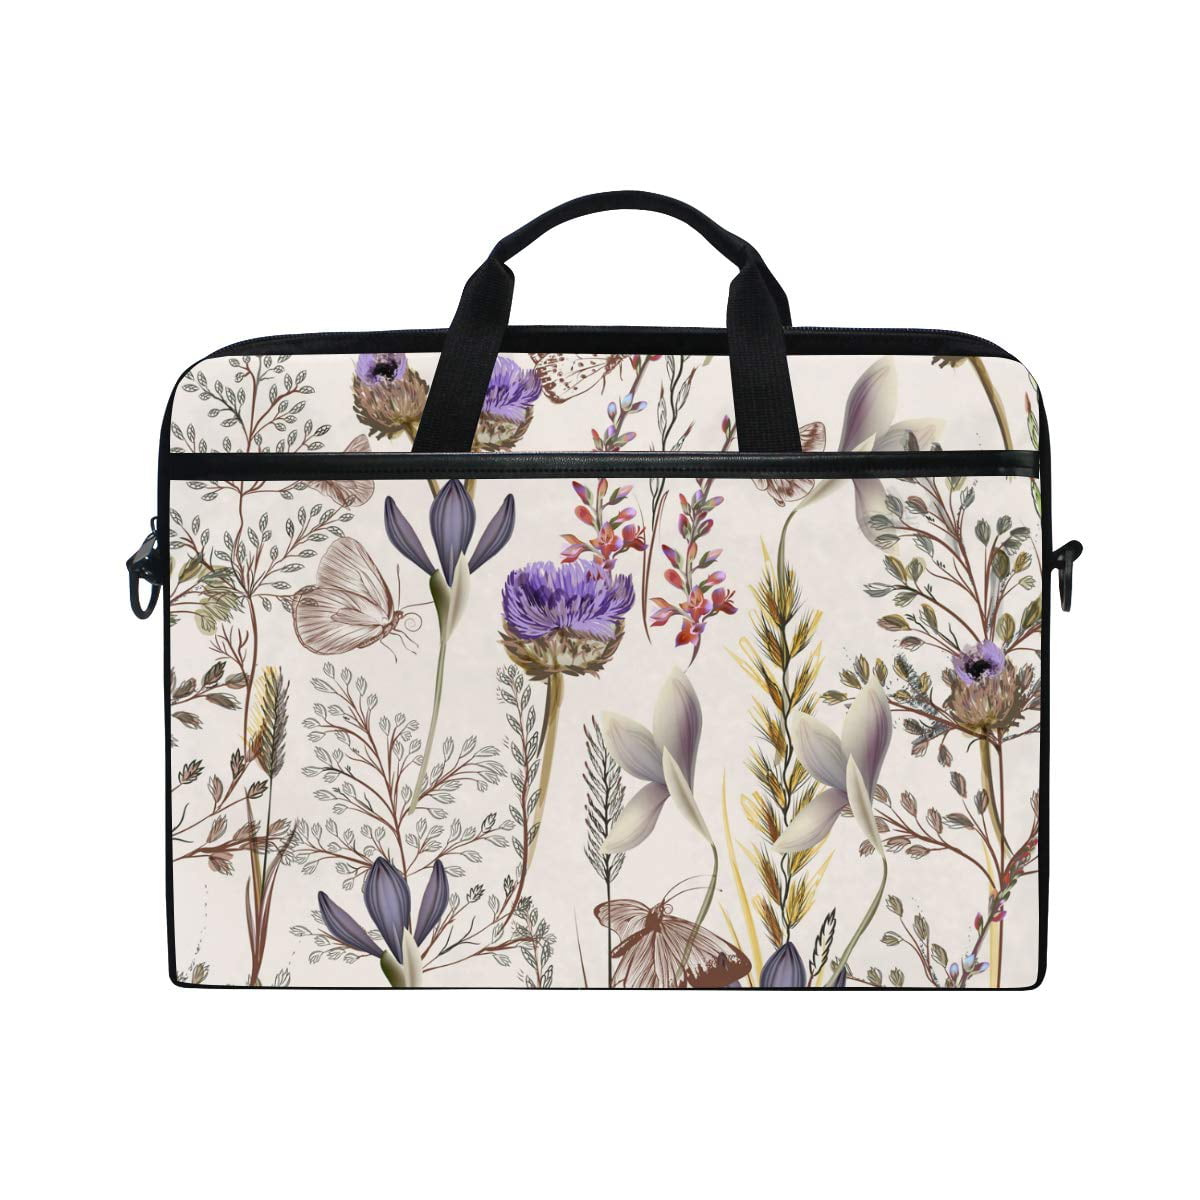 Laptop Case 15.6 inch Lavender Flower Floral Print Computer Messenger Bag with Shoulder Strap for Men Women Travel